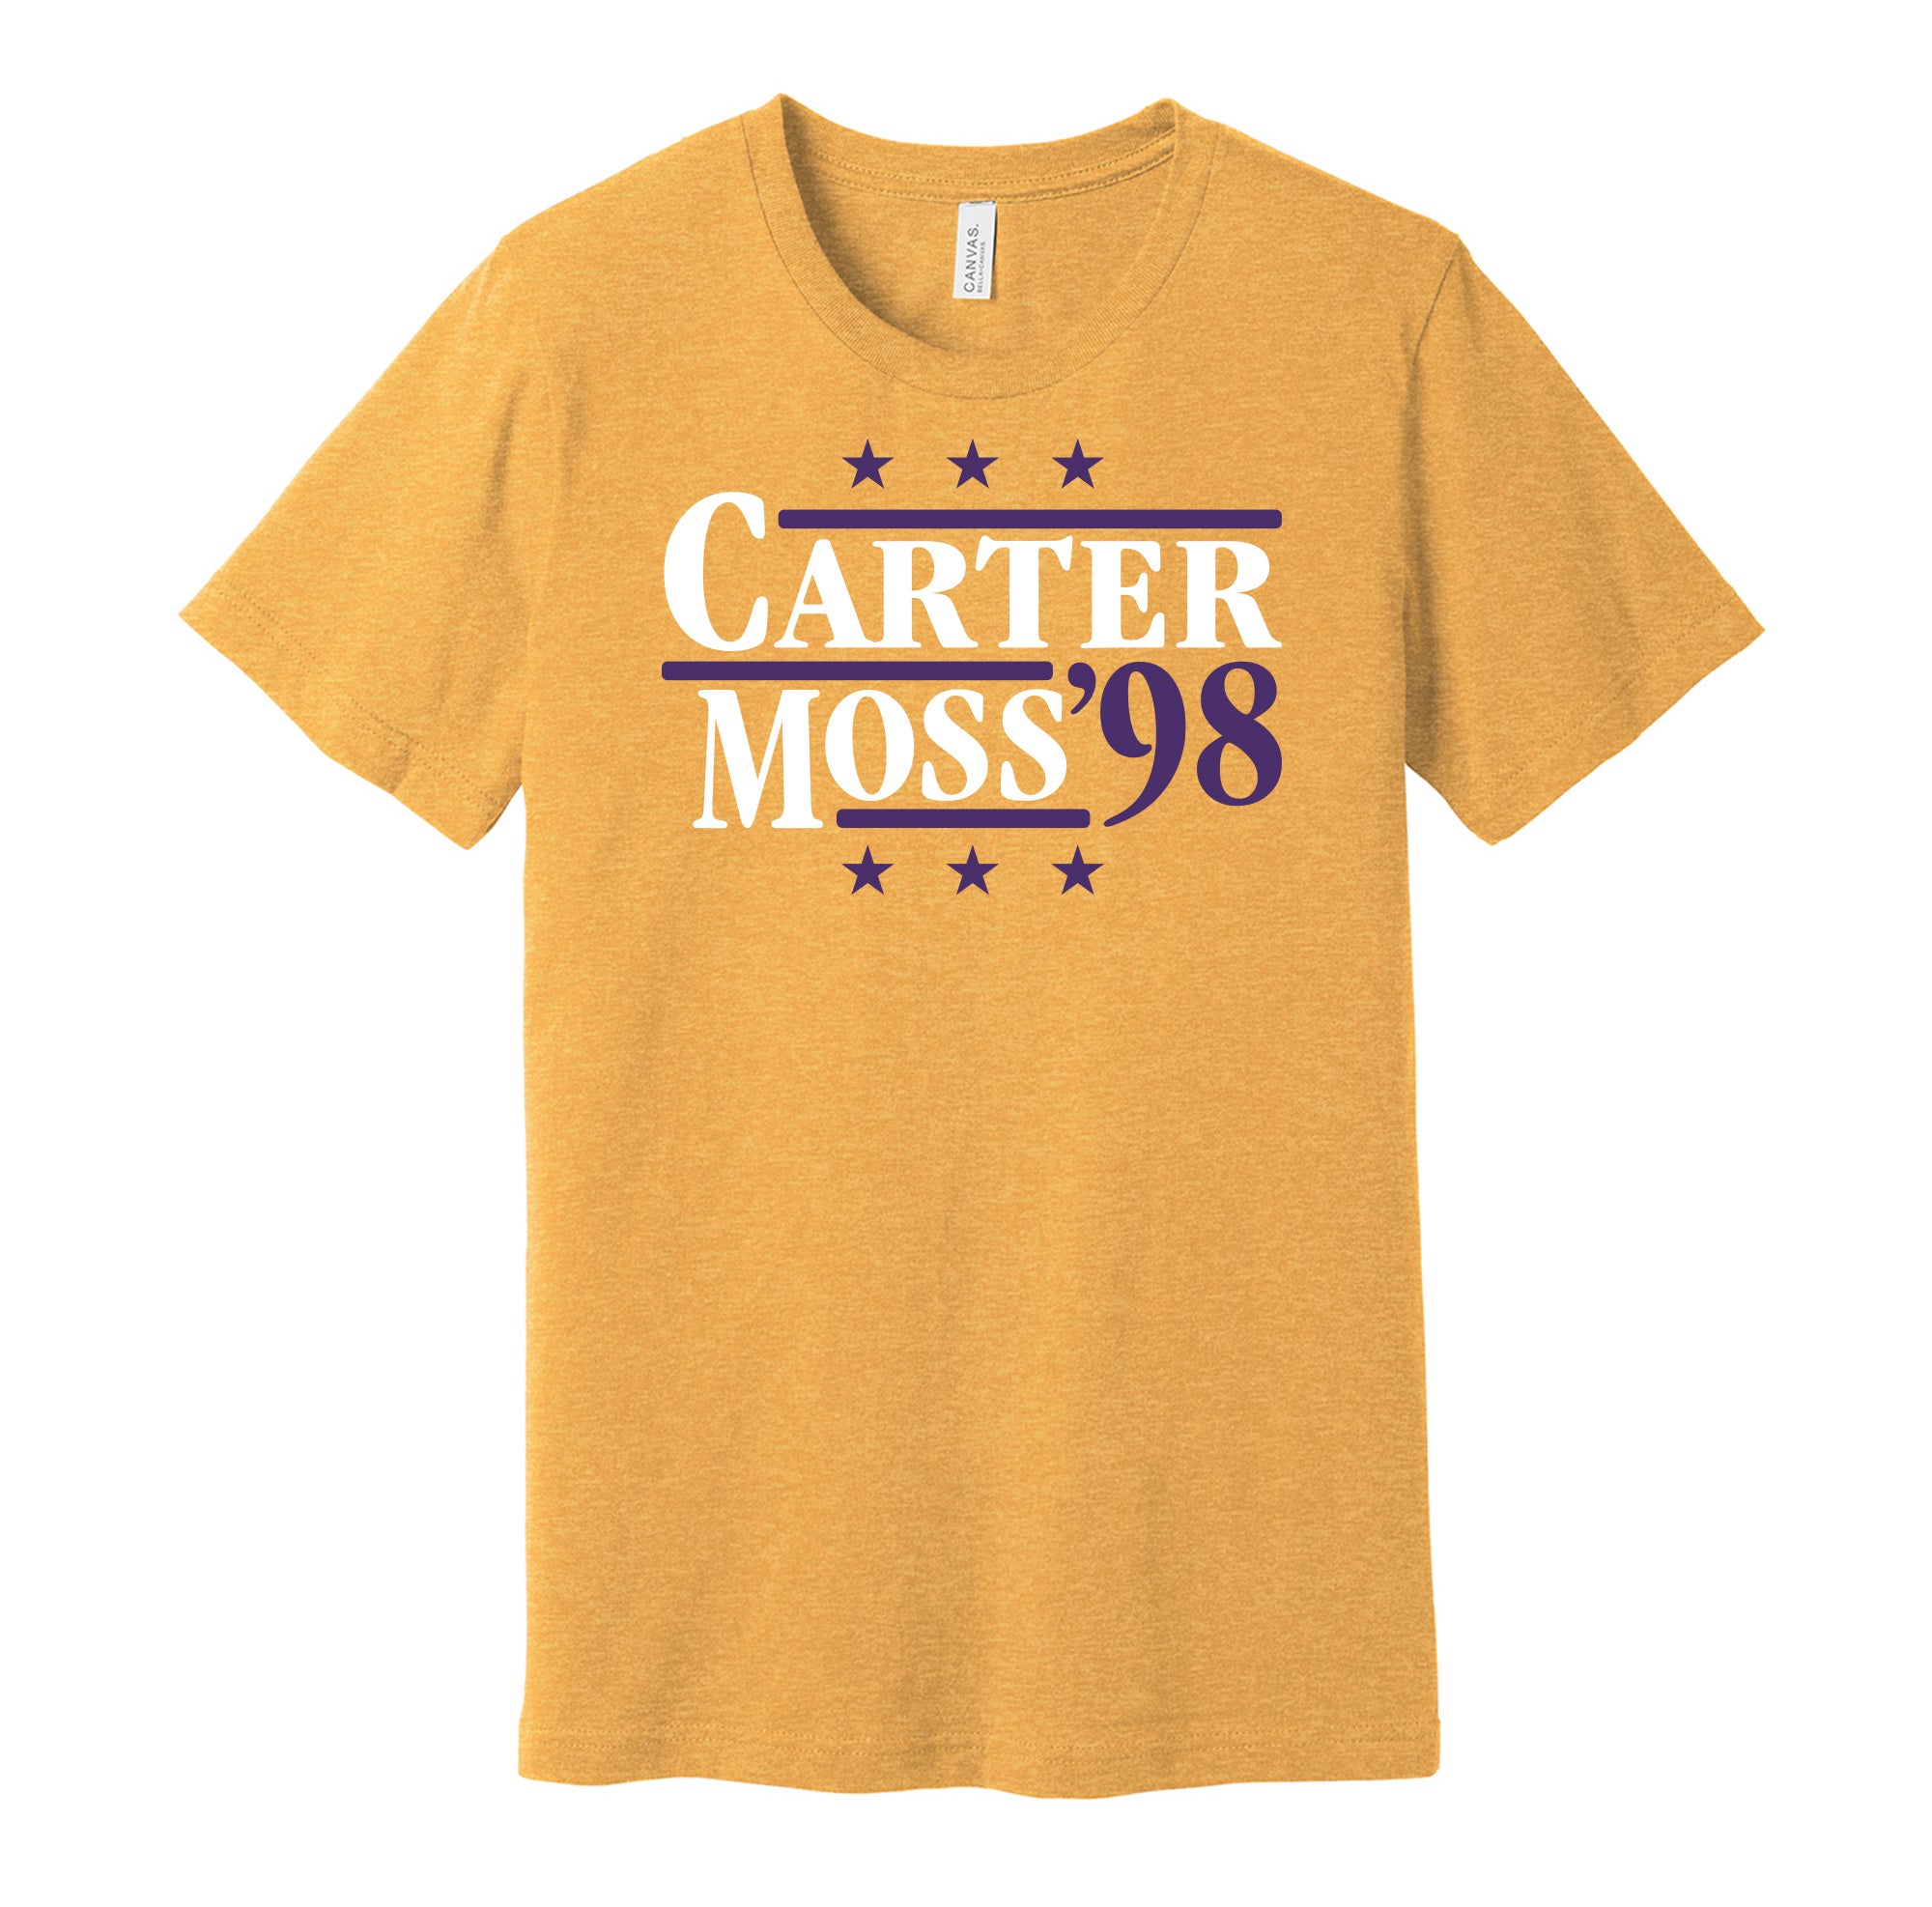 Carter & Moss '98 - Minnesota Legends Political Campaign Parody T-Shirt - Hyper Than Hype Shirts XL / Gold Shirt